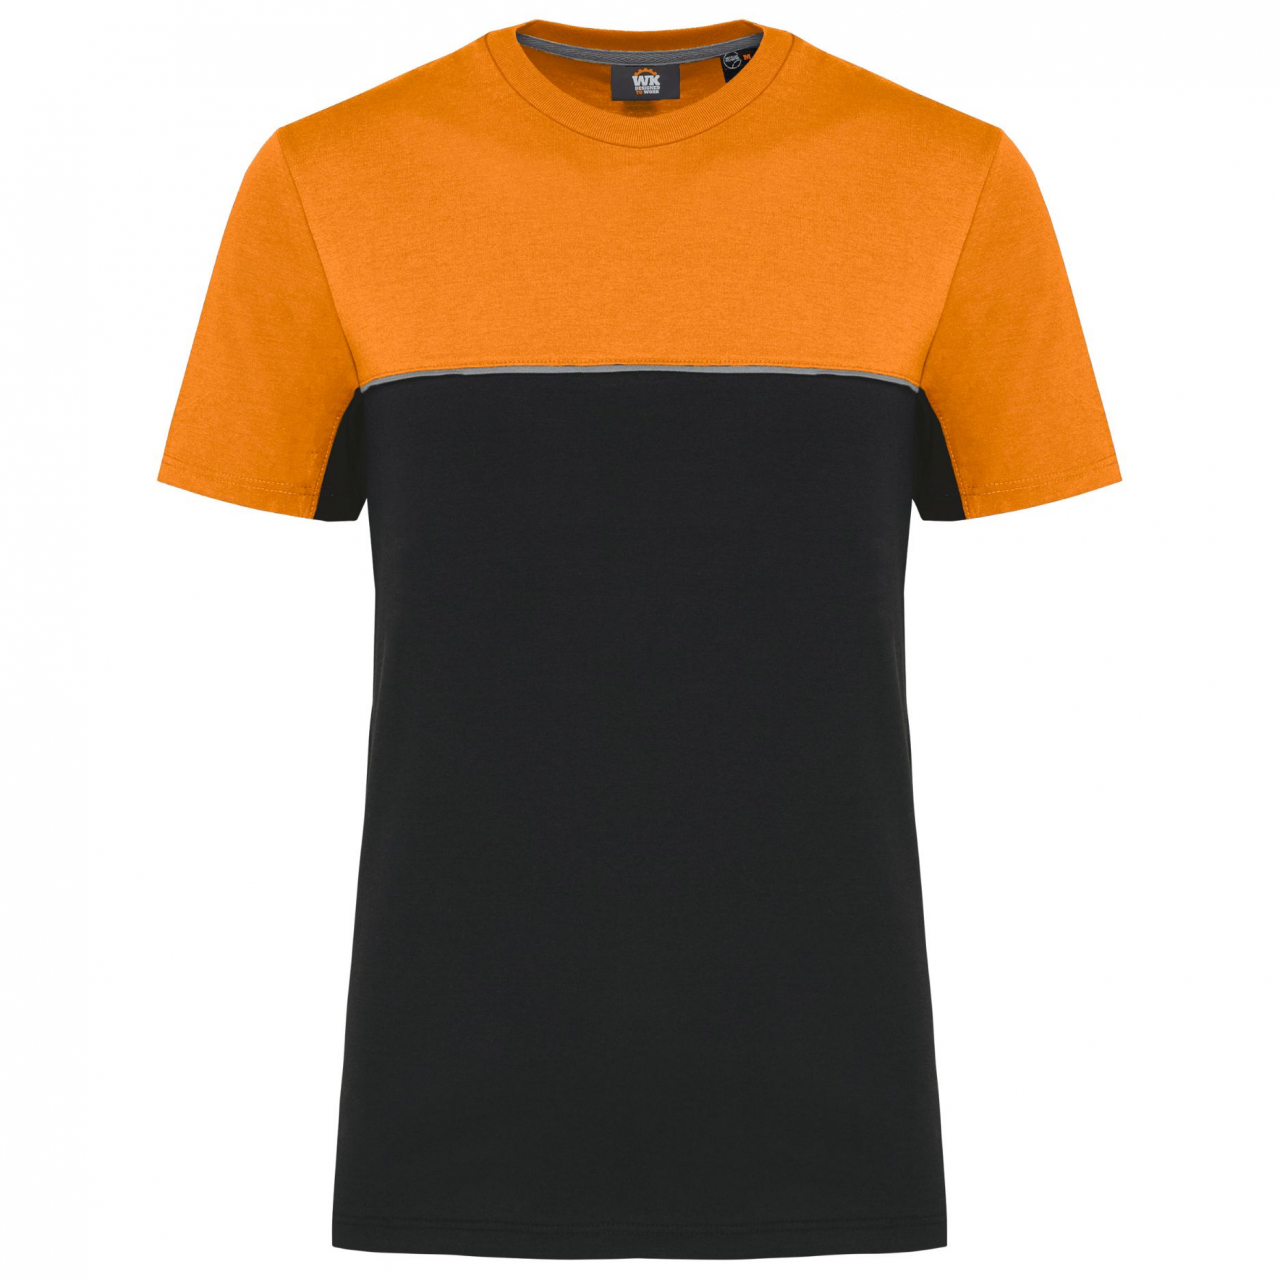 Pracovní triko dvoubarevné WK - černé-oranžové, XL